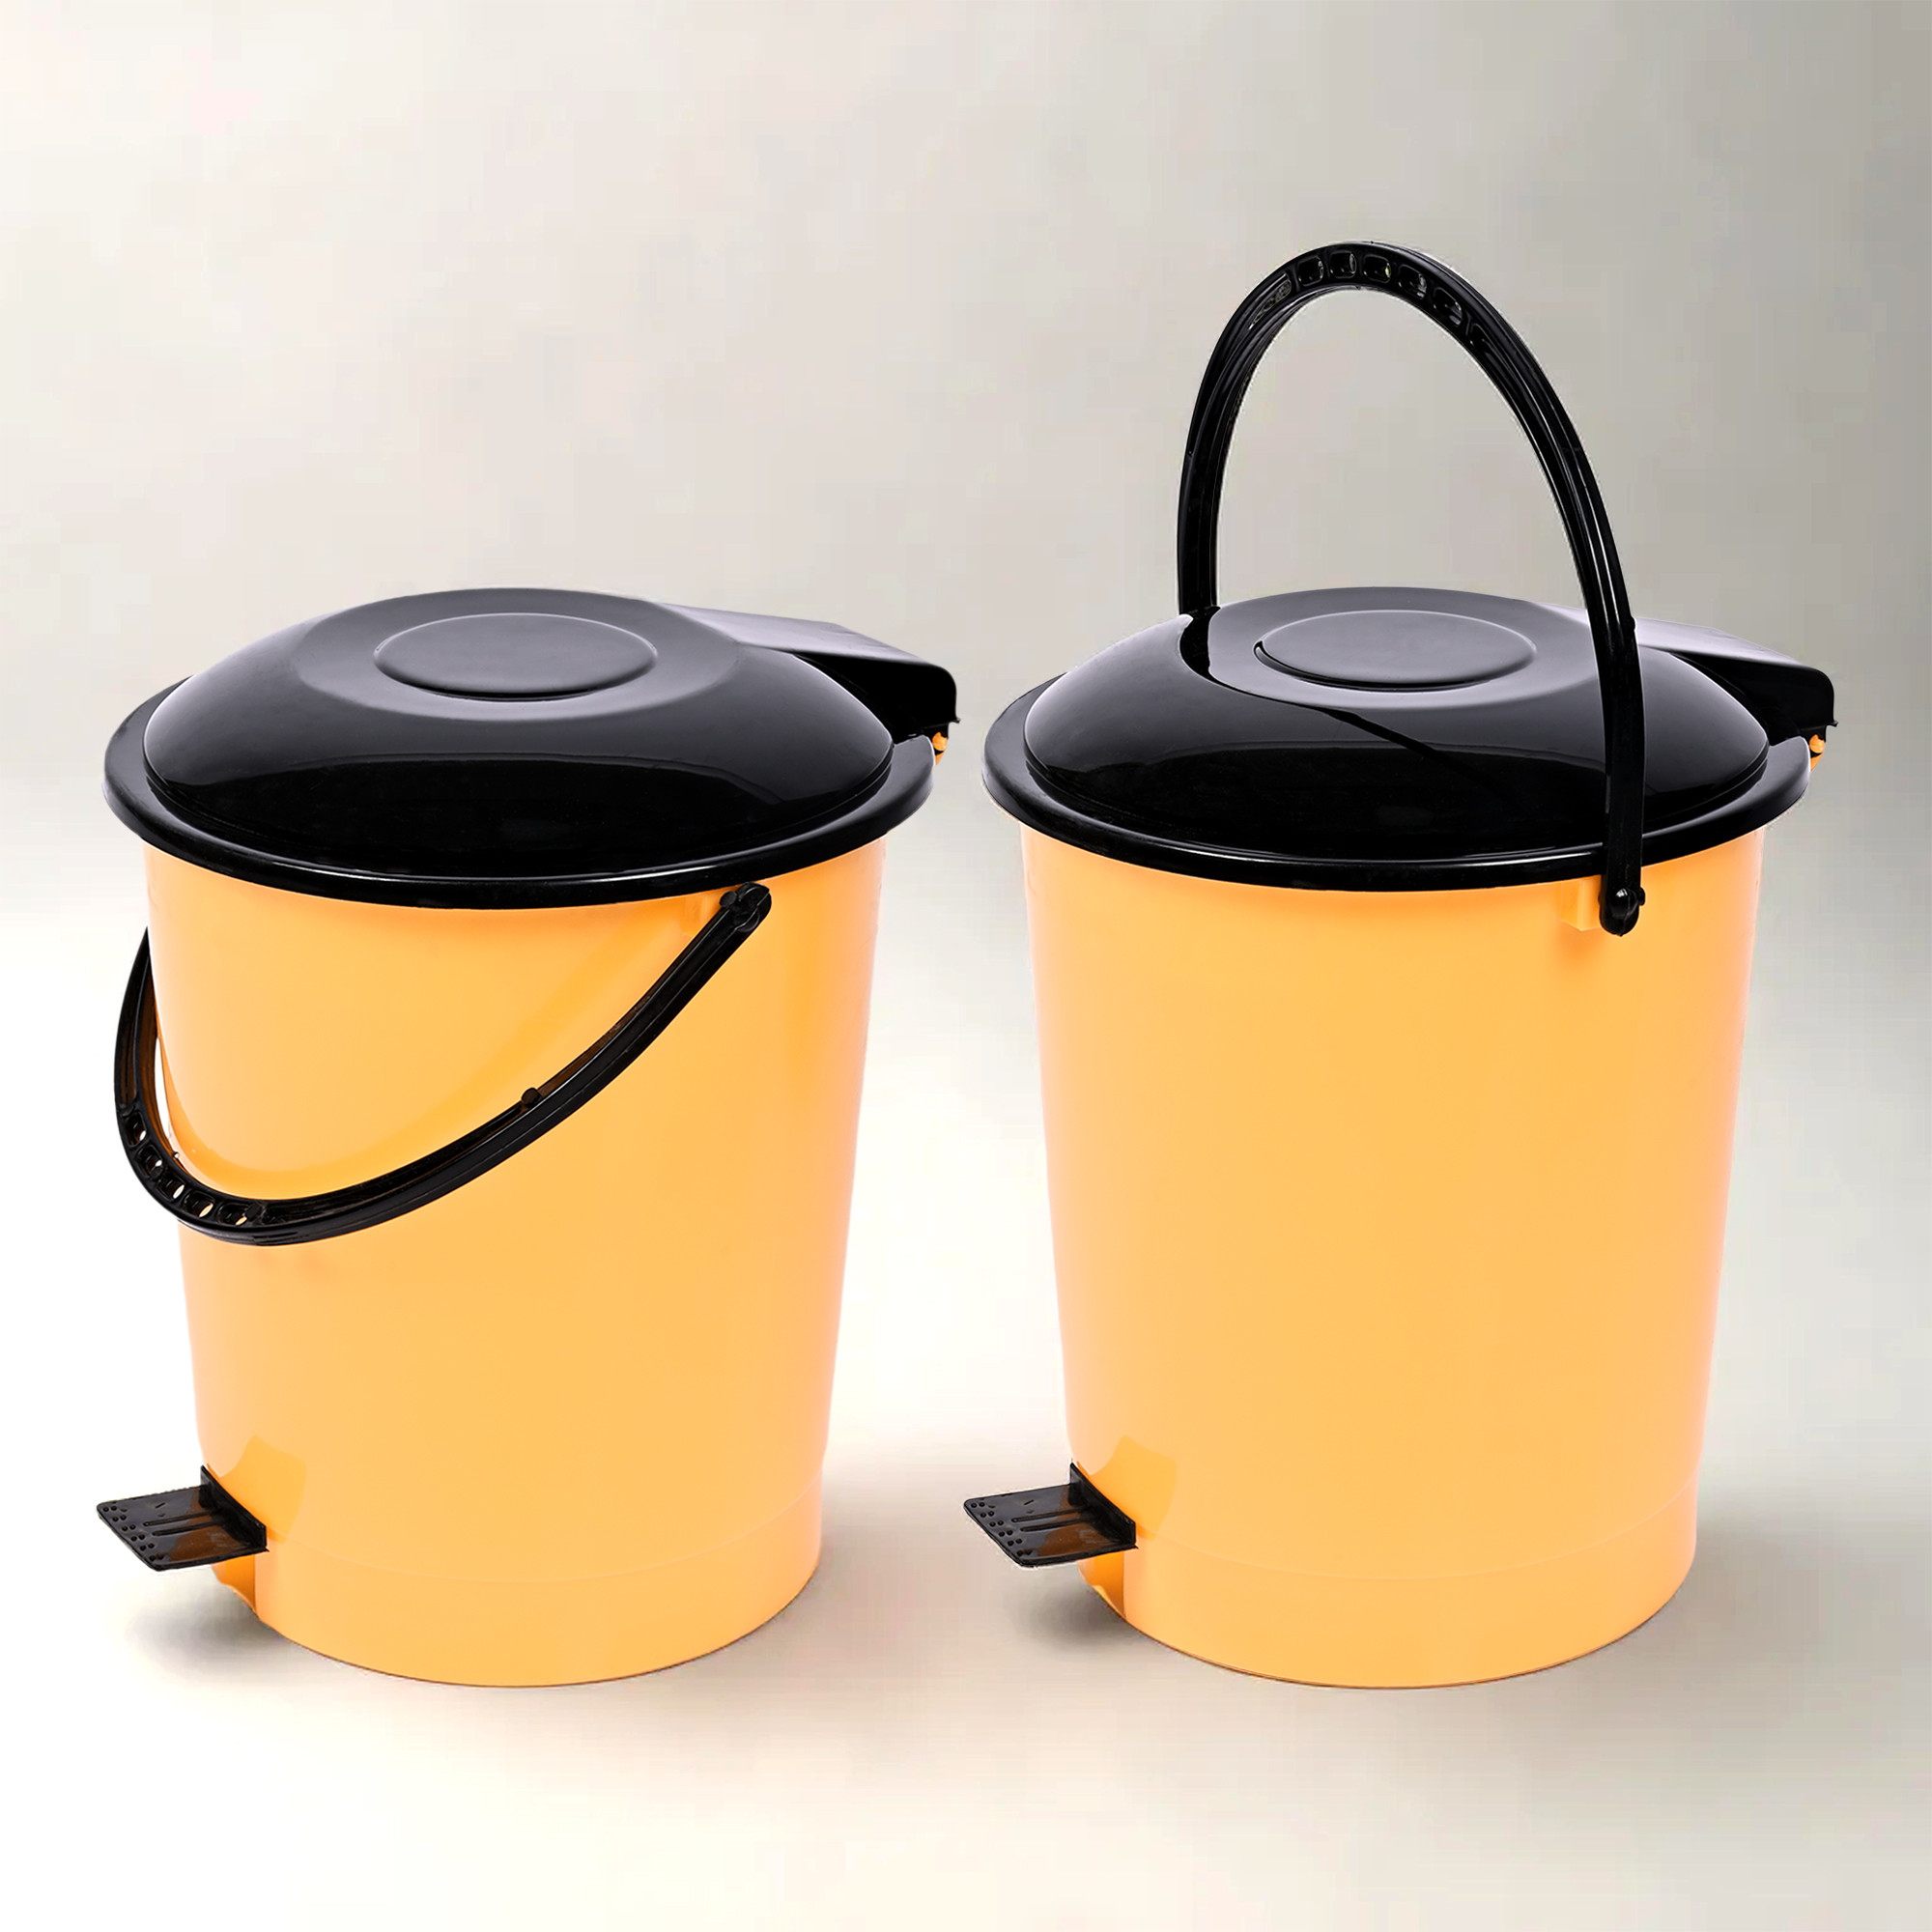 Kuber Industries Pedal Dustbin | Dustbin with Lid | Garbage Bin with Handle | Dustbin for Kitchen-Bathroom | Wet & Dry Waste Bin | Black Dhakkan Trash Can | 10 LTR | Orange